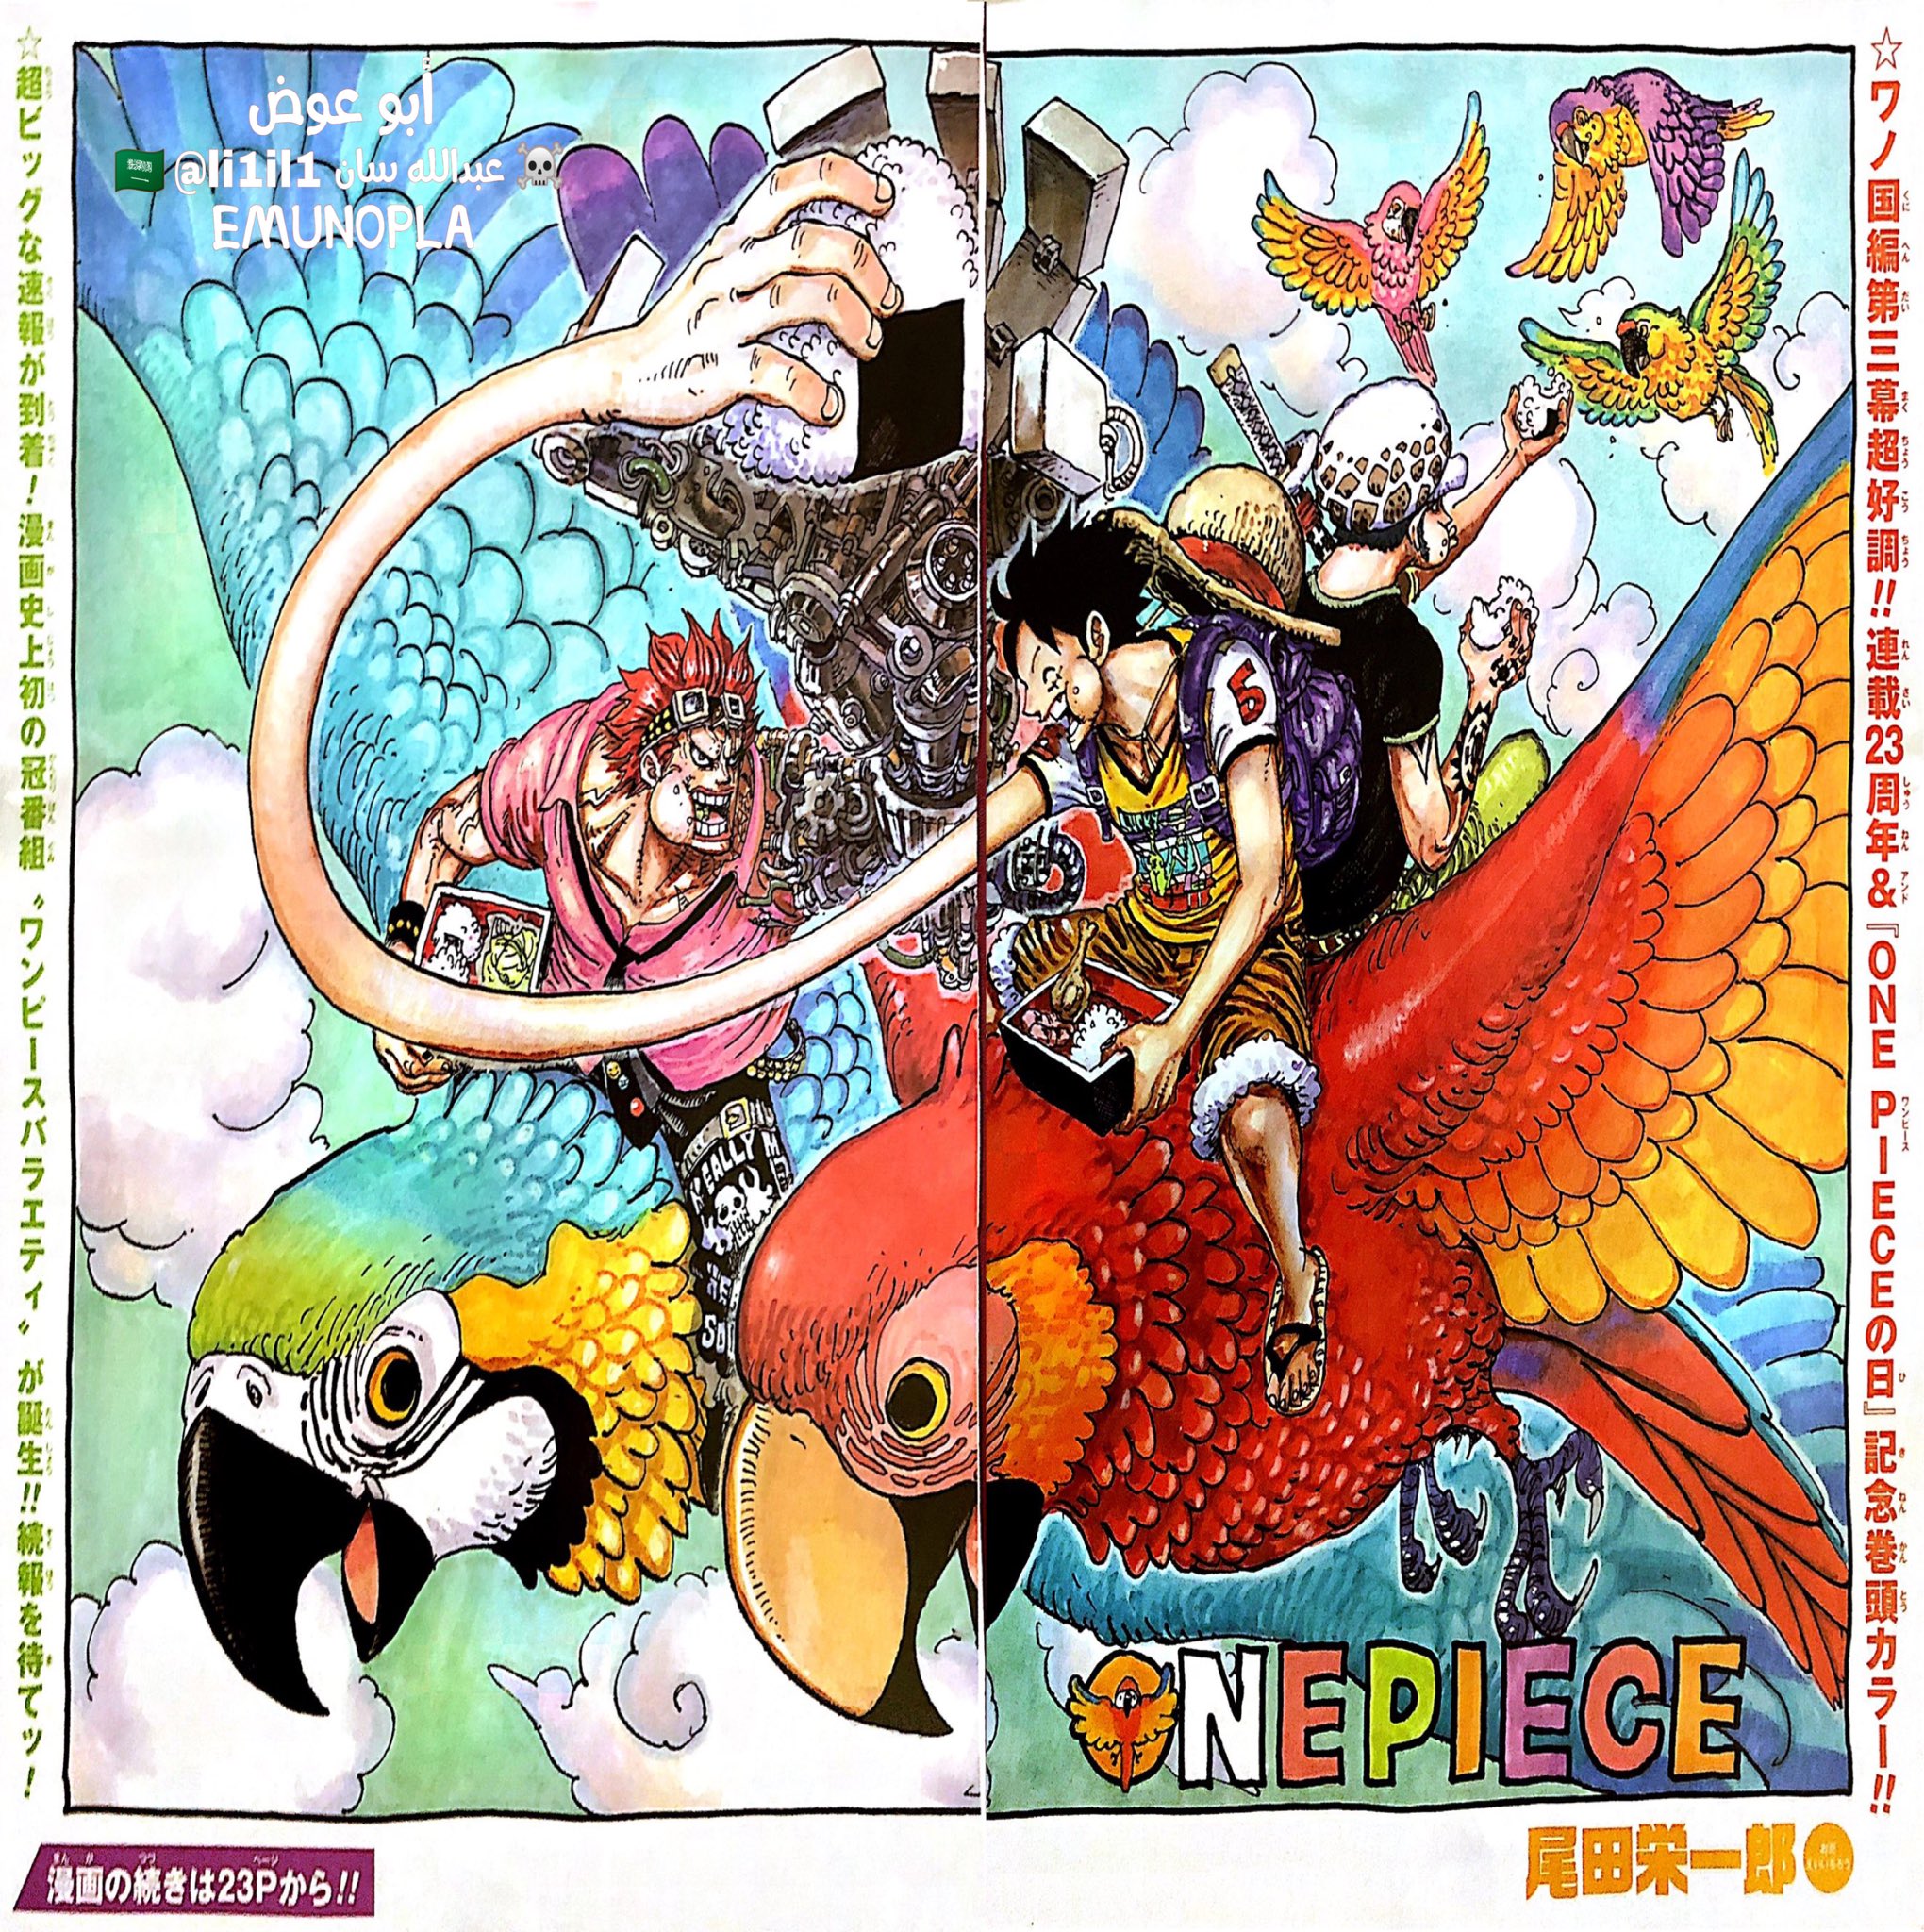 One Piece chapter 985: Nếu bạn đang theo dõi manga One Piece, thì chắc chắn không thể bỏ qua chapter 985 này. Với các diễn biến mới nhất trong câu chuyện, bạn sẽ được chứng kiến ​​những trận chiến và câu chuyện mới thú vị của Luffy và nhóm của mình. Hãy sẵn sàng cho một chương mới đầy đặn cảm xúc và bất ngờ.